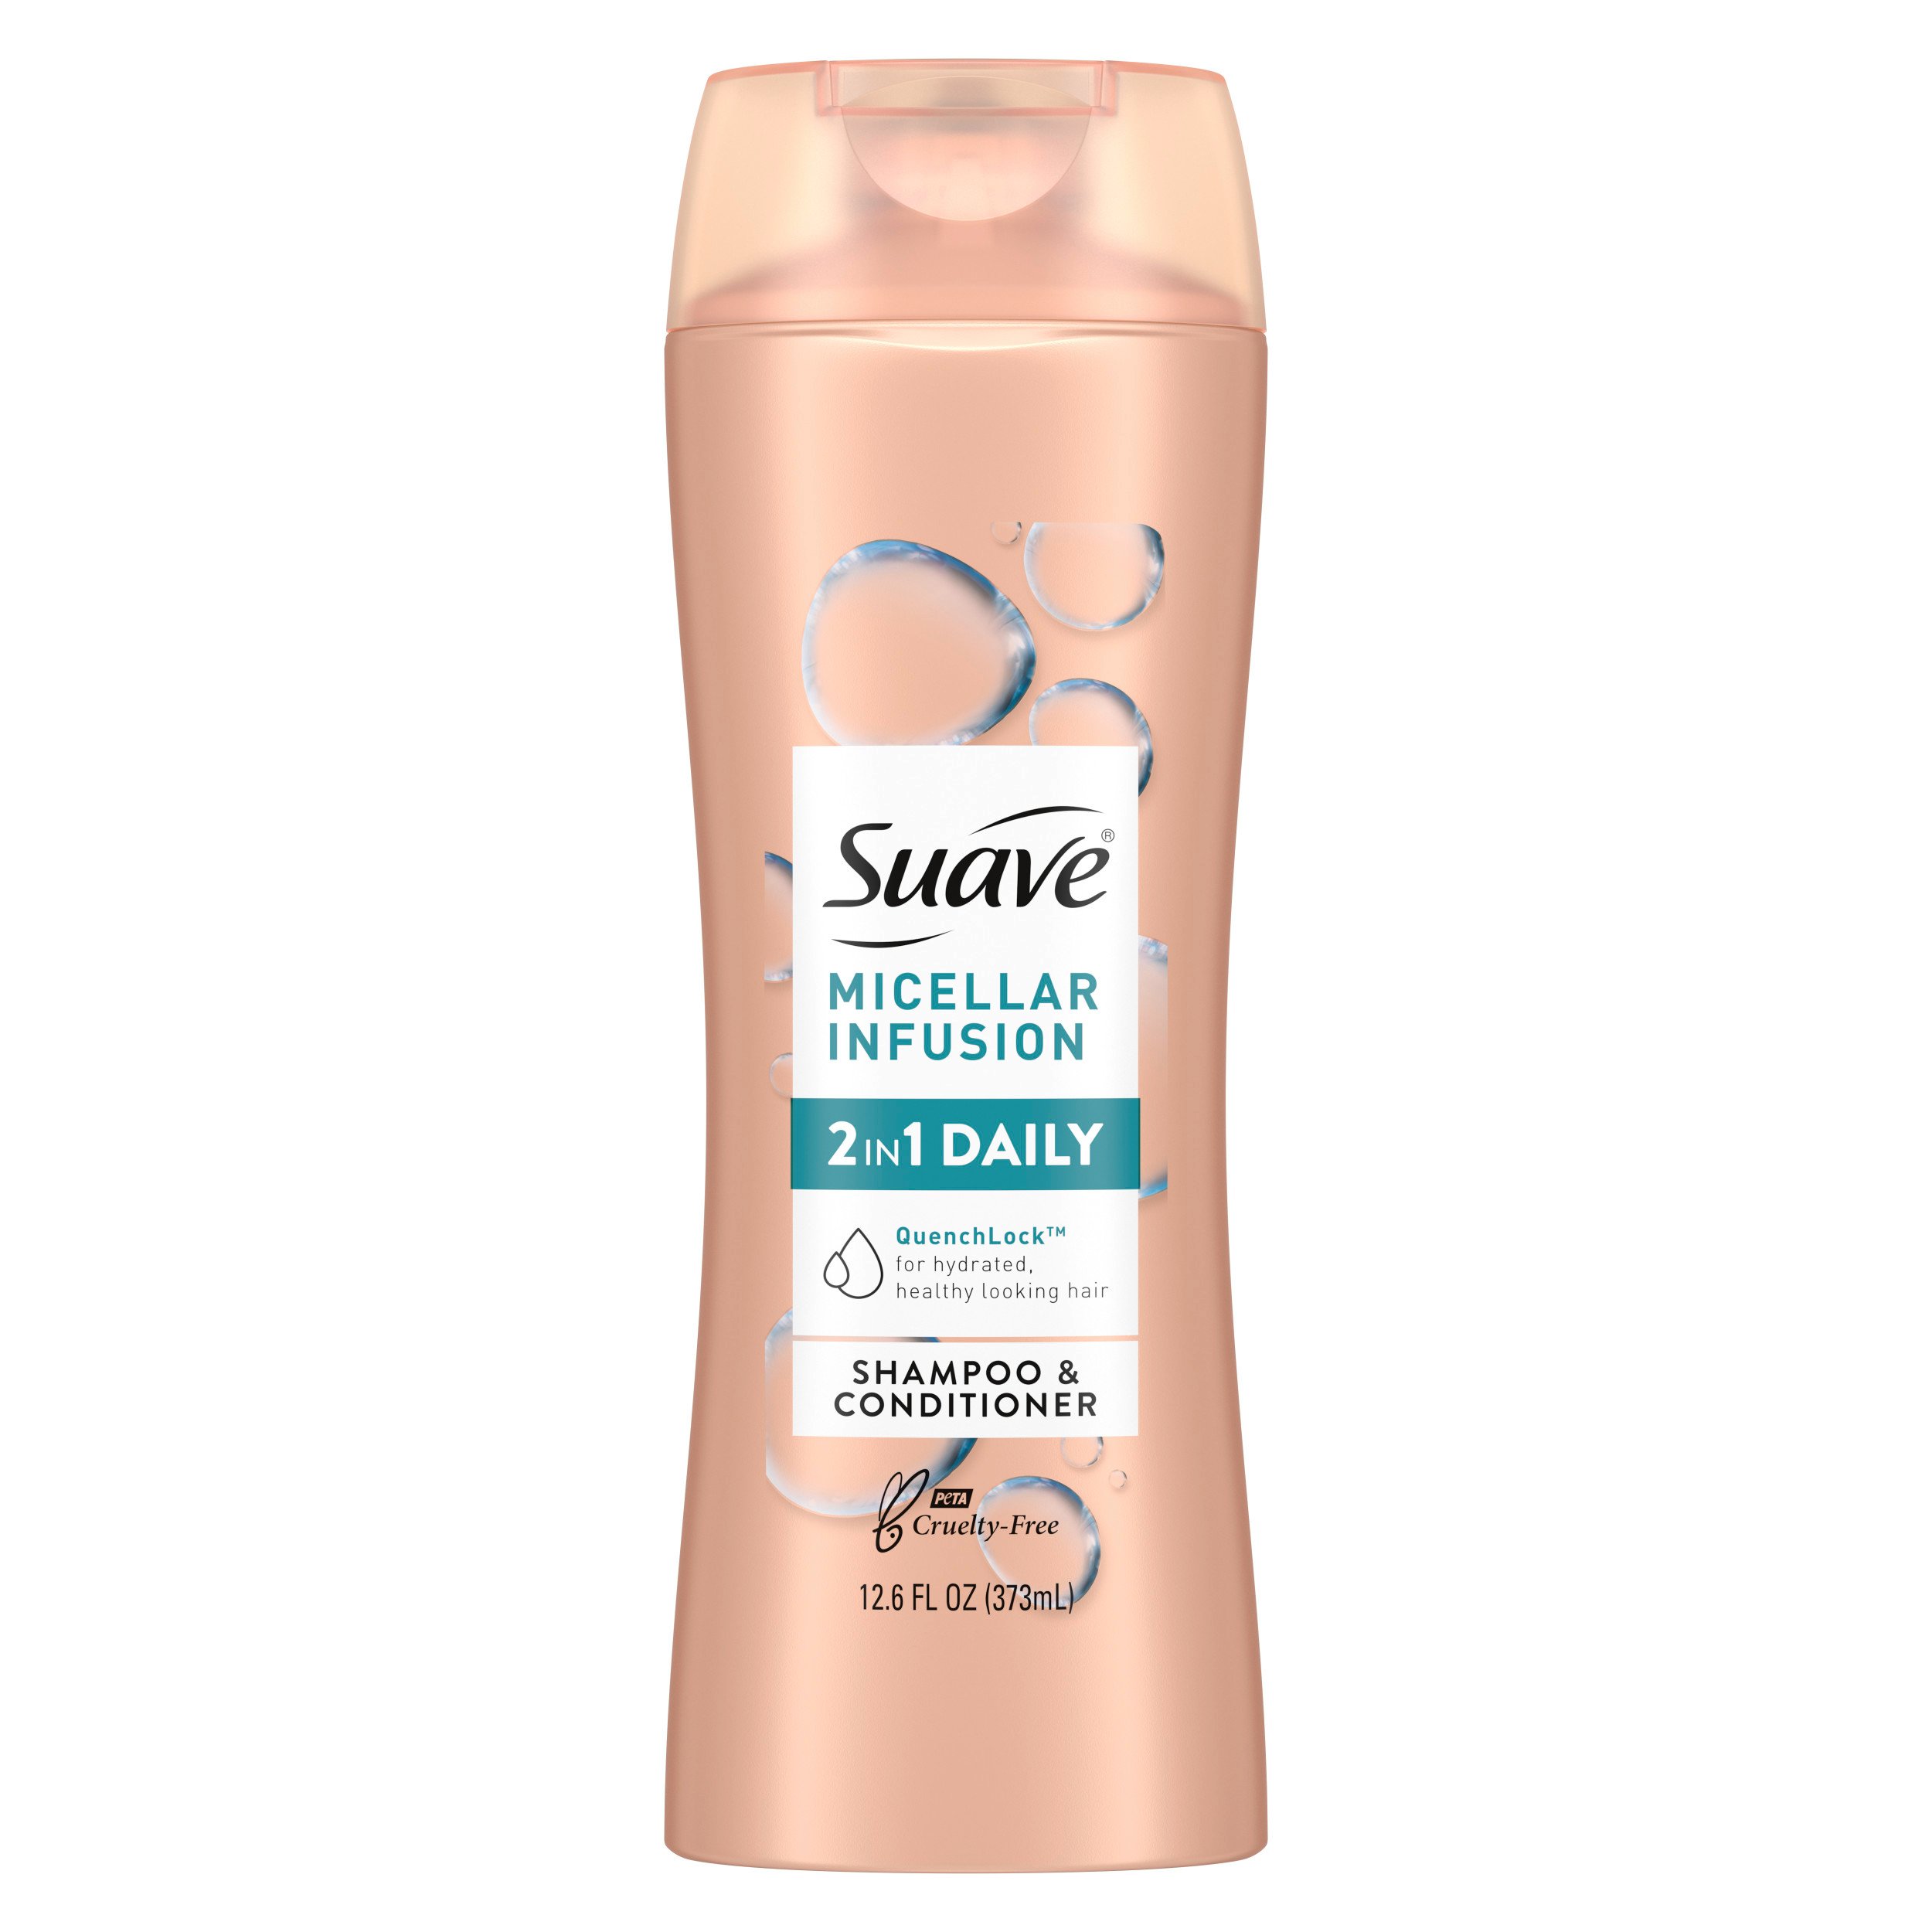 Suave Micellar Infusion 2 in 1 Shampoo Conditioner - Shop Shampoo & Conditioner at H-E-B